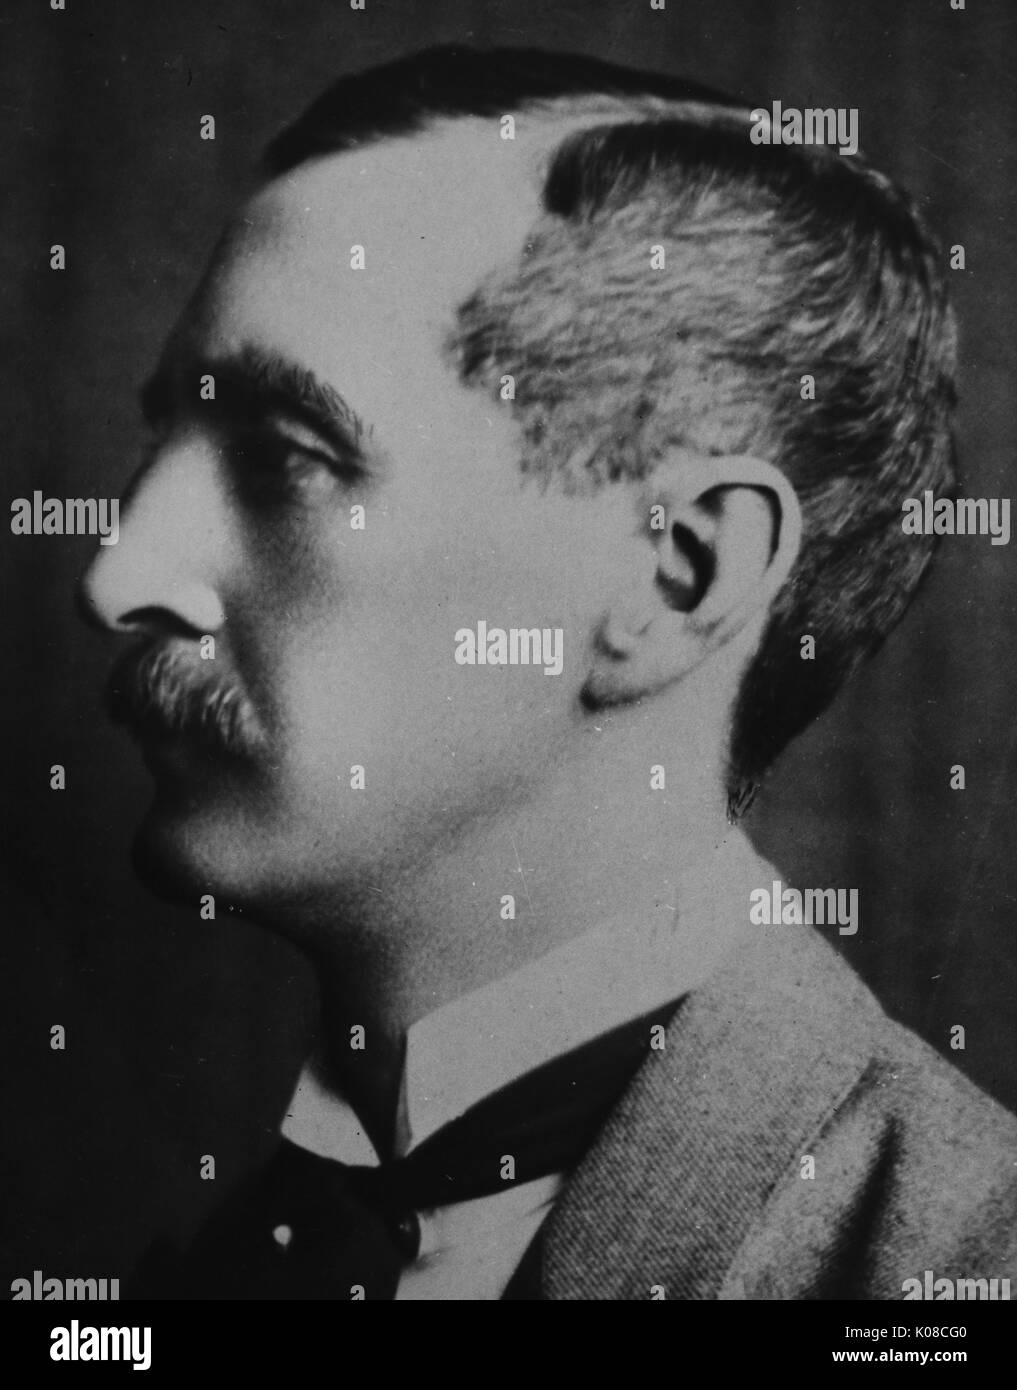 Head-shot der Philanthrop Theodore Marburg, trug eine schwarze Krawatte und ein weißes Hemd unter einer dunklen Jacke, ein Profil der Seite seines Gesichtes, das einen dicken Schnurrbart und Fest gekämmte Haare, 1885. Stockfoto